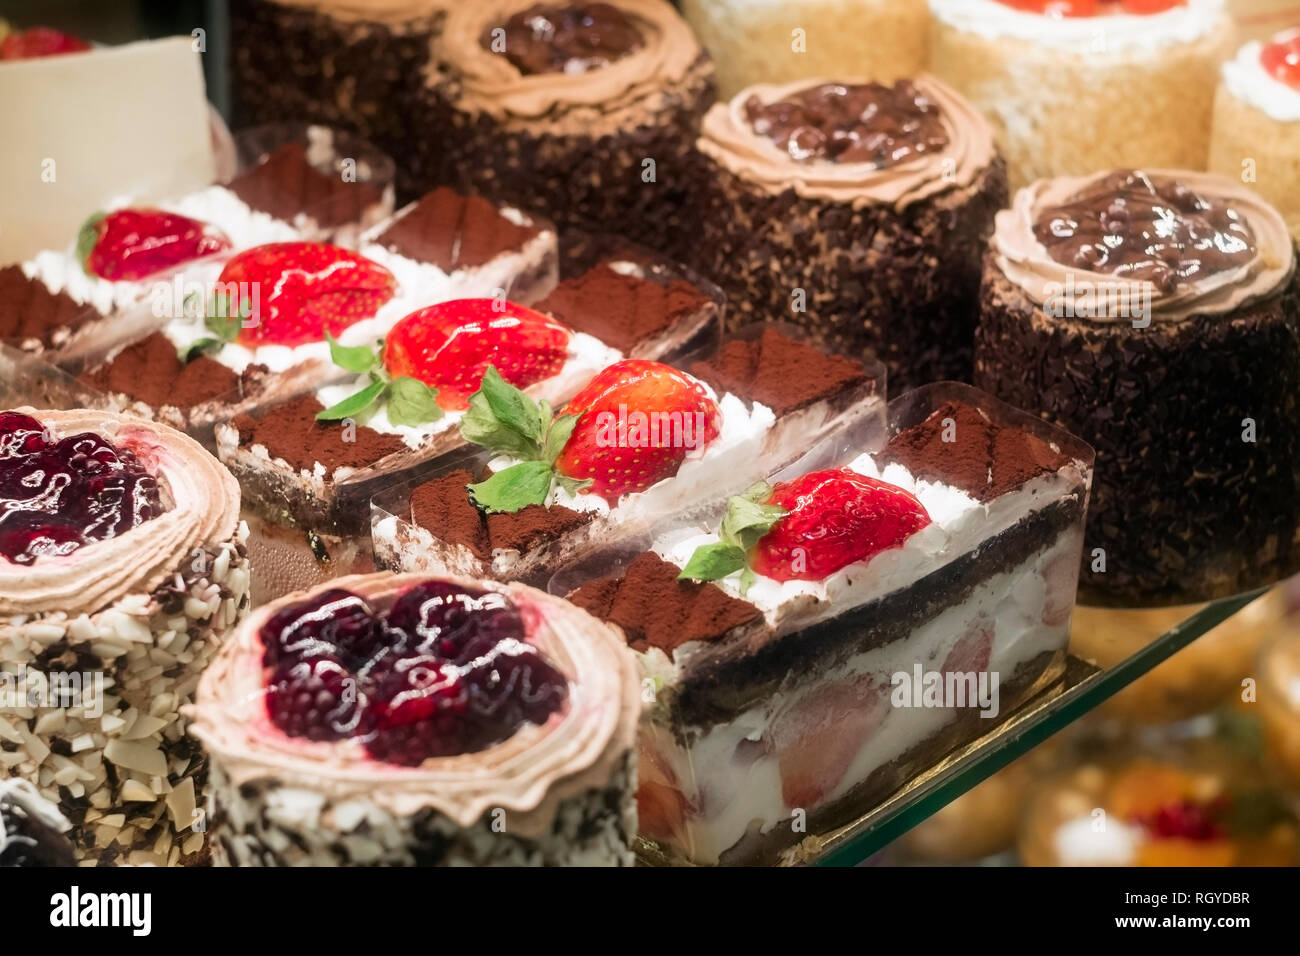 Fragola deliziosa, blackberry e torte al cioccolato in una pasticceria nella finestra di visualizzazione Foto Stock